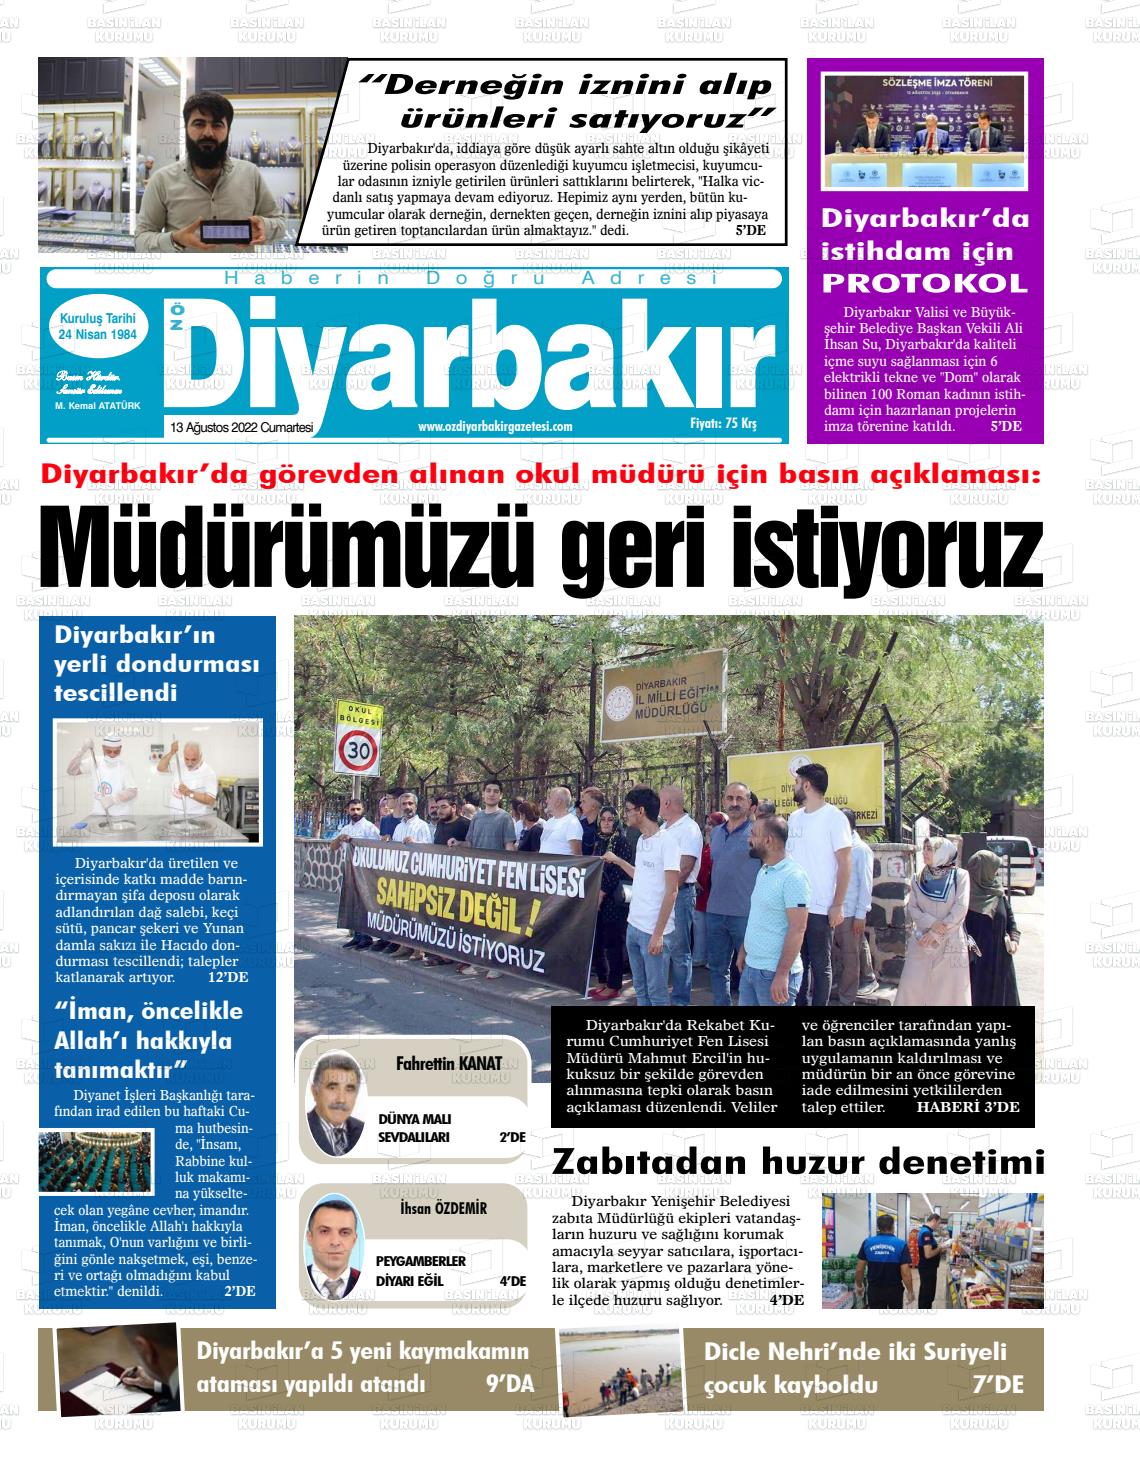 13 Ağustos 2022 Öz Diyarbakir Gazete Gazete Manşeti